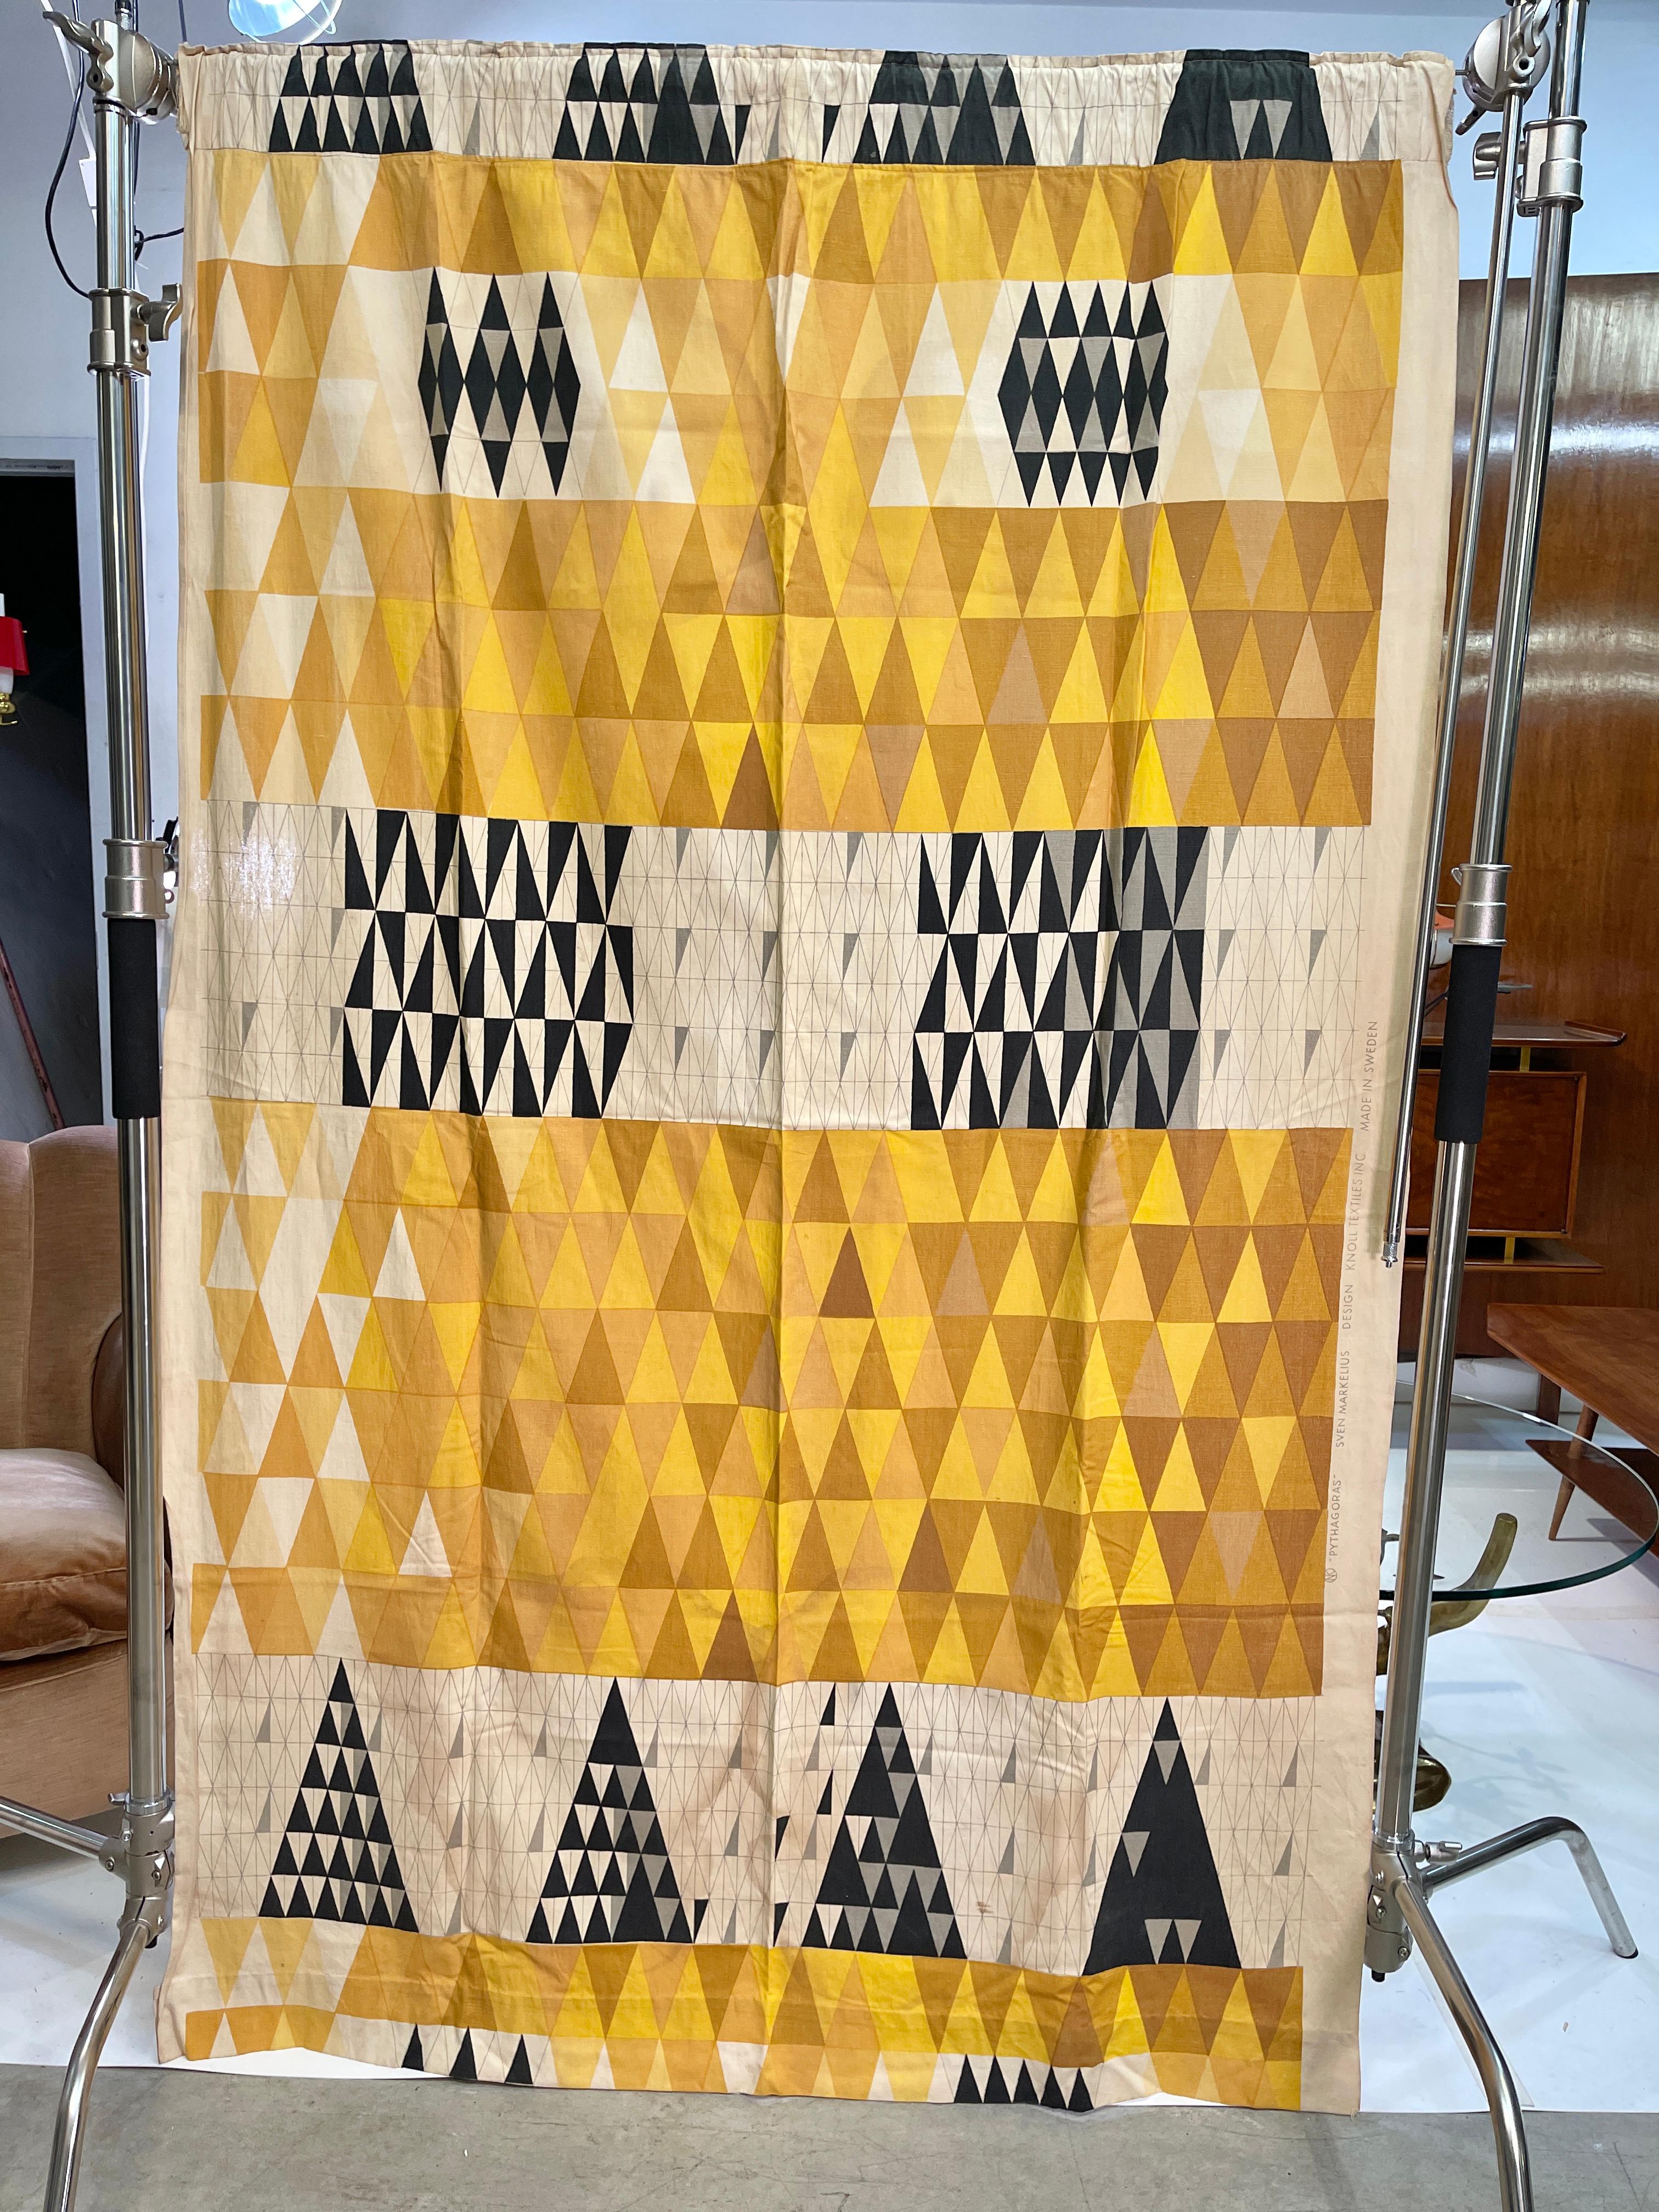 Sven Markelius (1889-1970), Pythagoras Drapierung, 1952 von Ljungberg's Textile AB, Schweden, für Knoll Associates, New York, NY, hergestellt.
Die Gesamtabmessungen sind 77 Zoll hoch und 50 Zoll breit, einschließlich der bedruckten Kante. 
An der